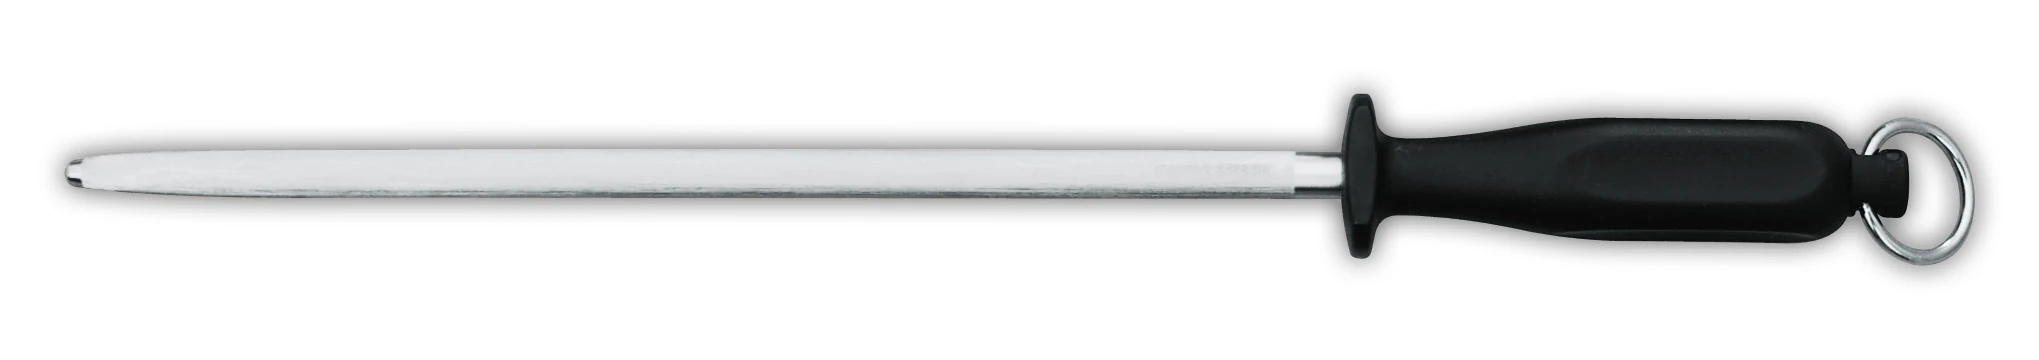 Giesser 31cm / 12" Sharpening Steel